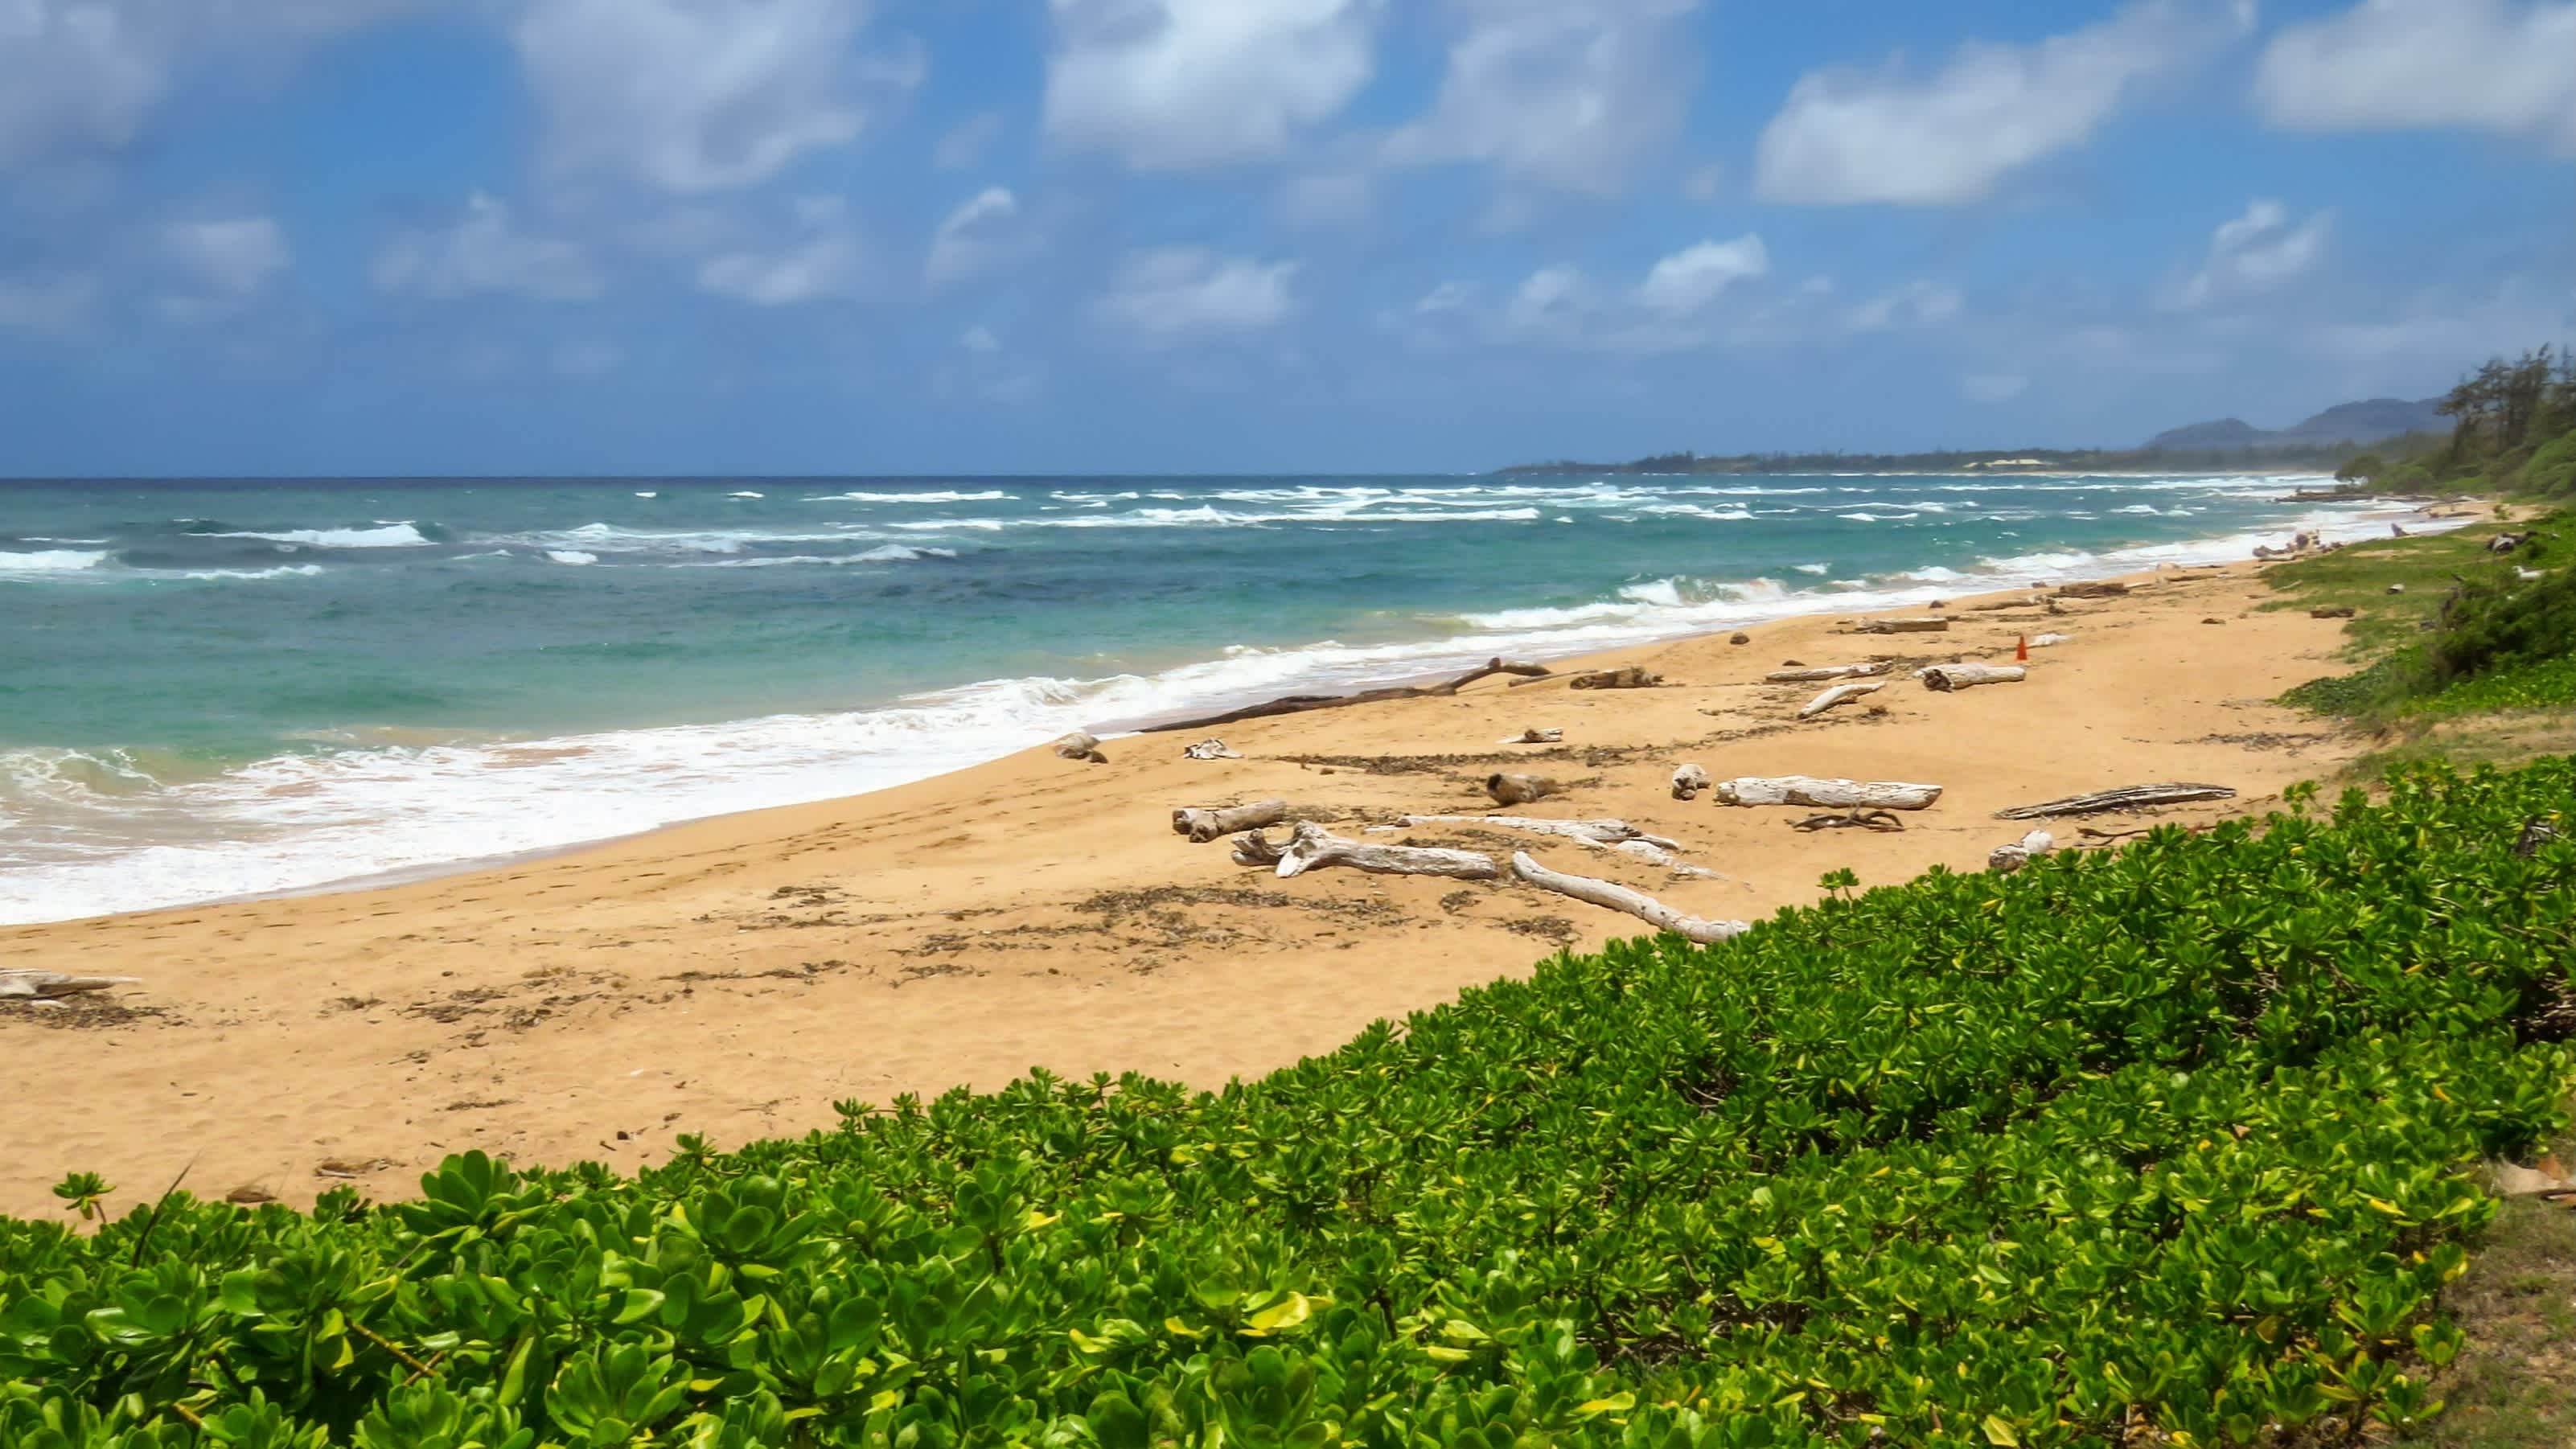 Der Strand Lydgate Beach, Kauai, Hawaii, USA bei blauem Himmel und mit Blick auf das Meer sowie natürliche Vegetation.